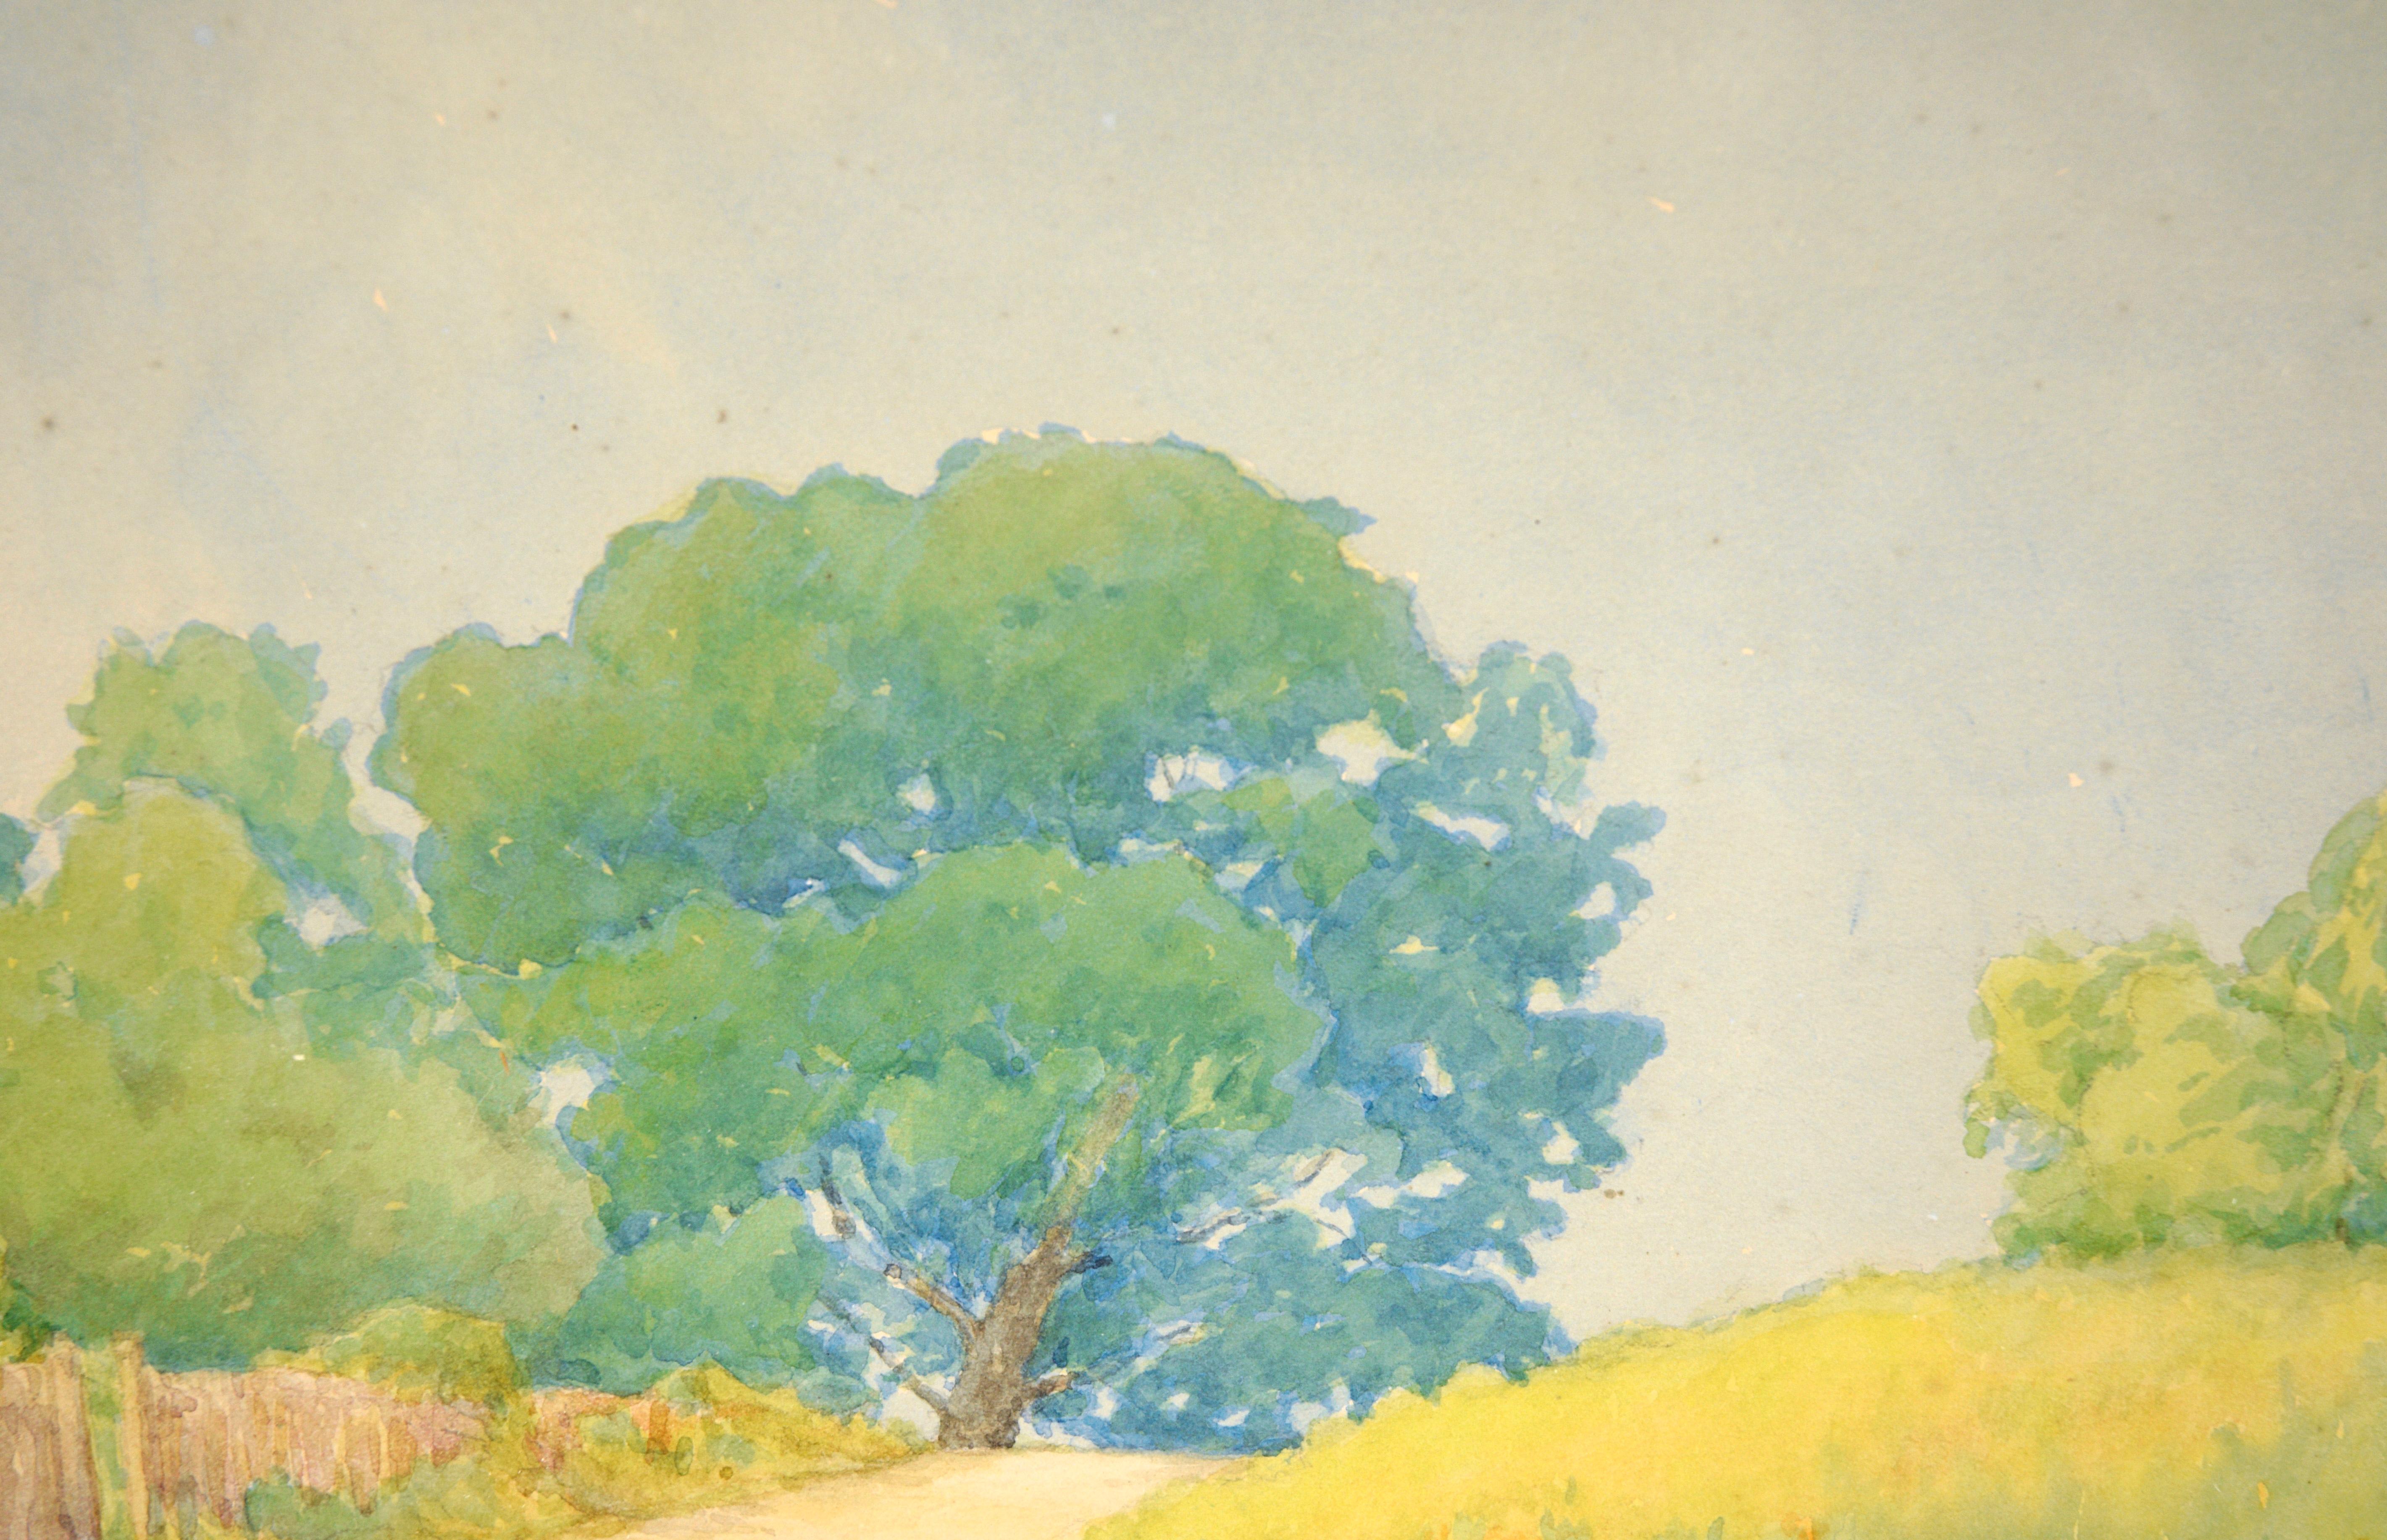 Fleurs dorées et chênes bleus - Paysage rural californien en aquarelle sur papier

Paysage vibrant de l'artiste californienne Marie Williams (américaine, 1878-1969). Des fleurs jaunes couvrent un champ le long d'un chemin dans une zone rurale de